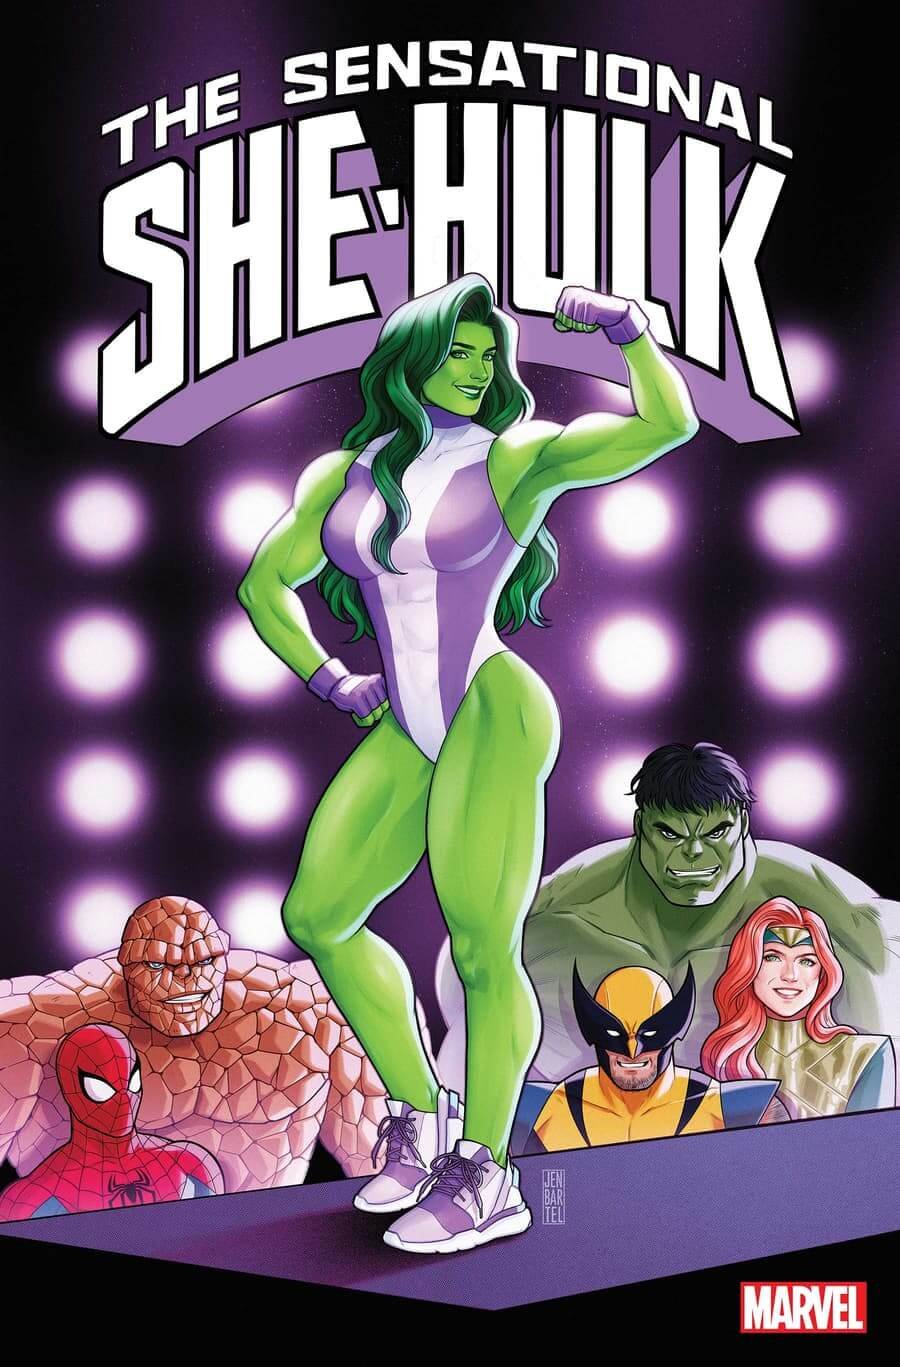 Couverture de Sensational She-Hulk 1, par Jen Bartel